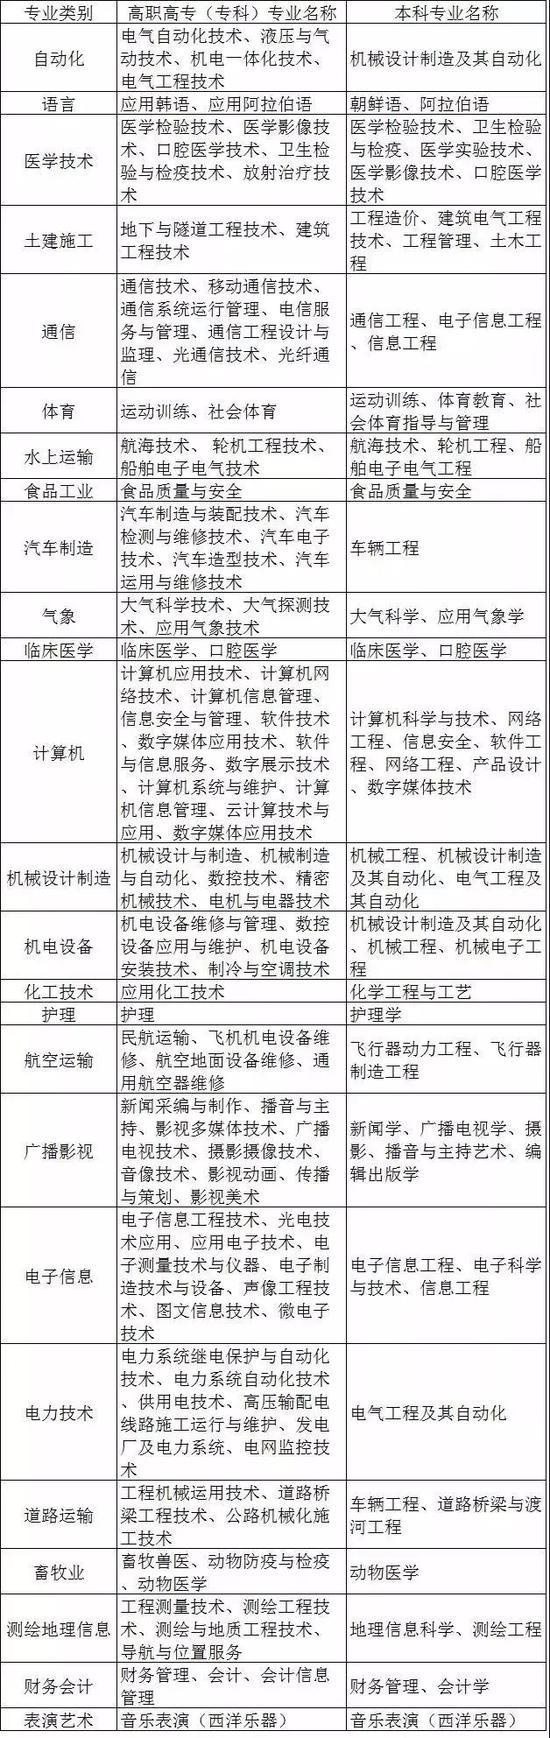 河北2019年度直招士官报名即将截止 招收专业表